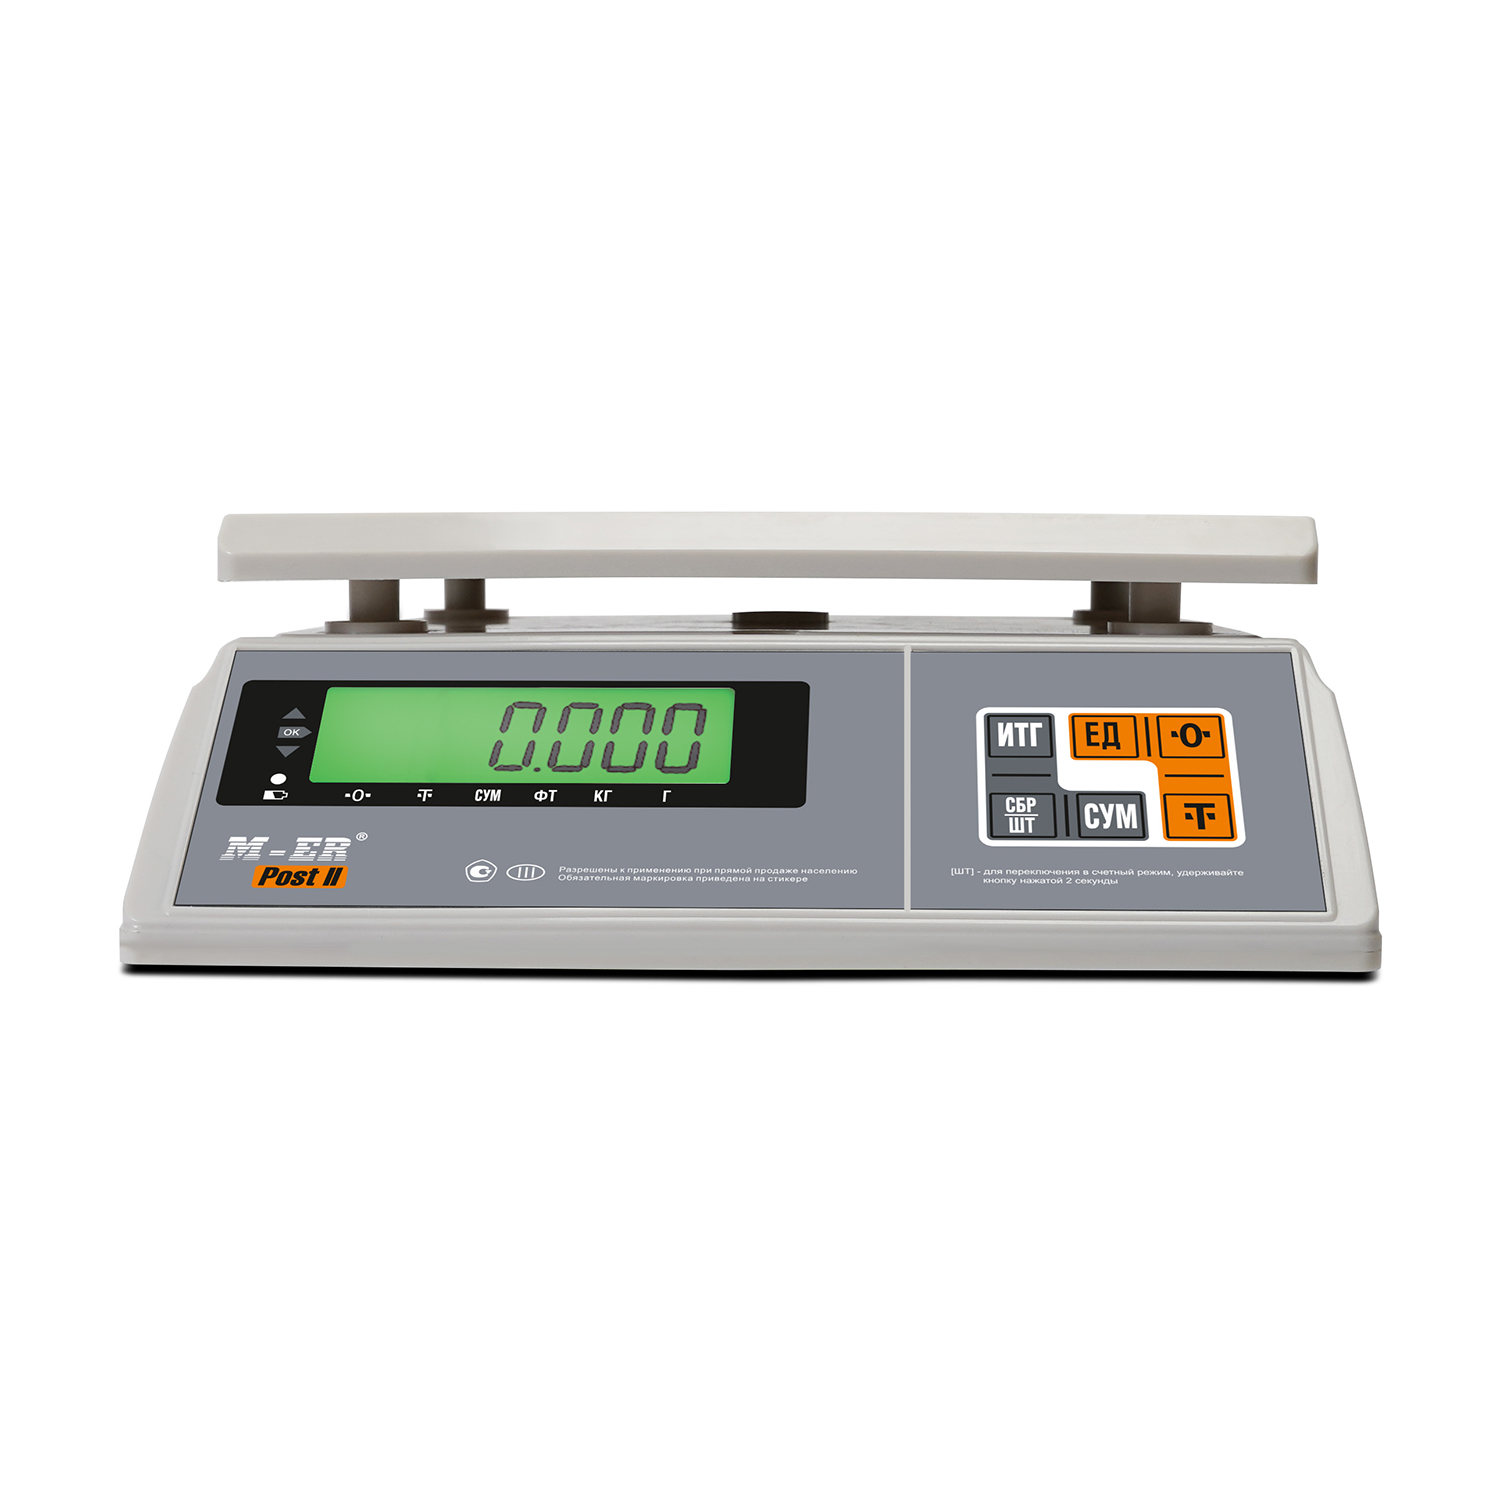 Порционные весы M-ER 326 AFU-32.1 "Post II" LCD RS-232 (3099)